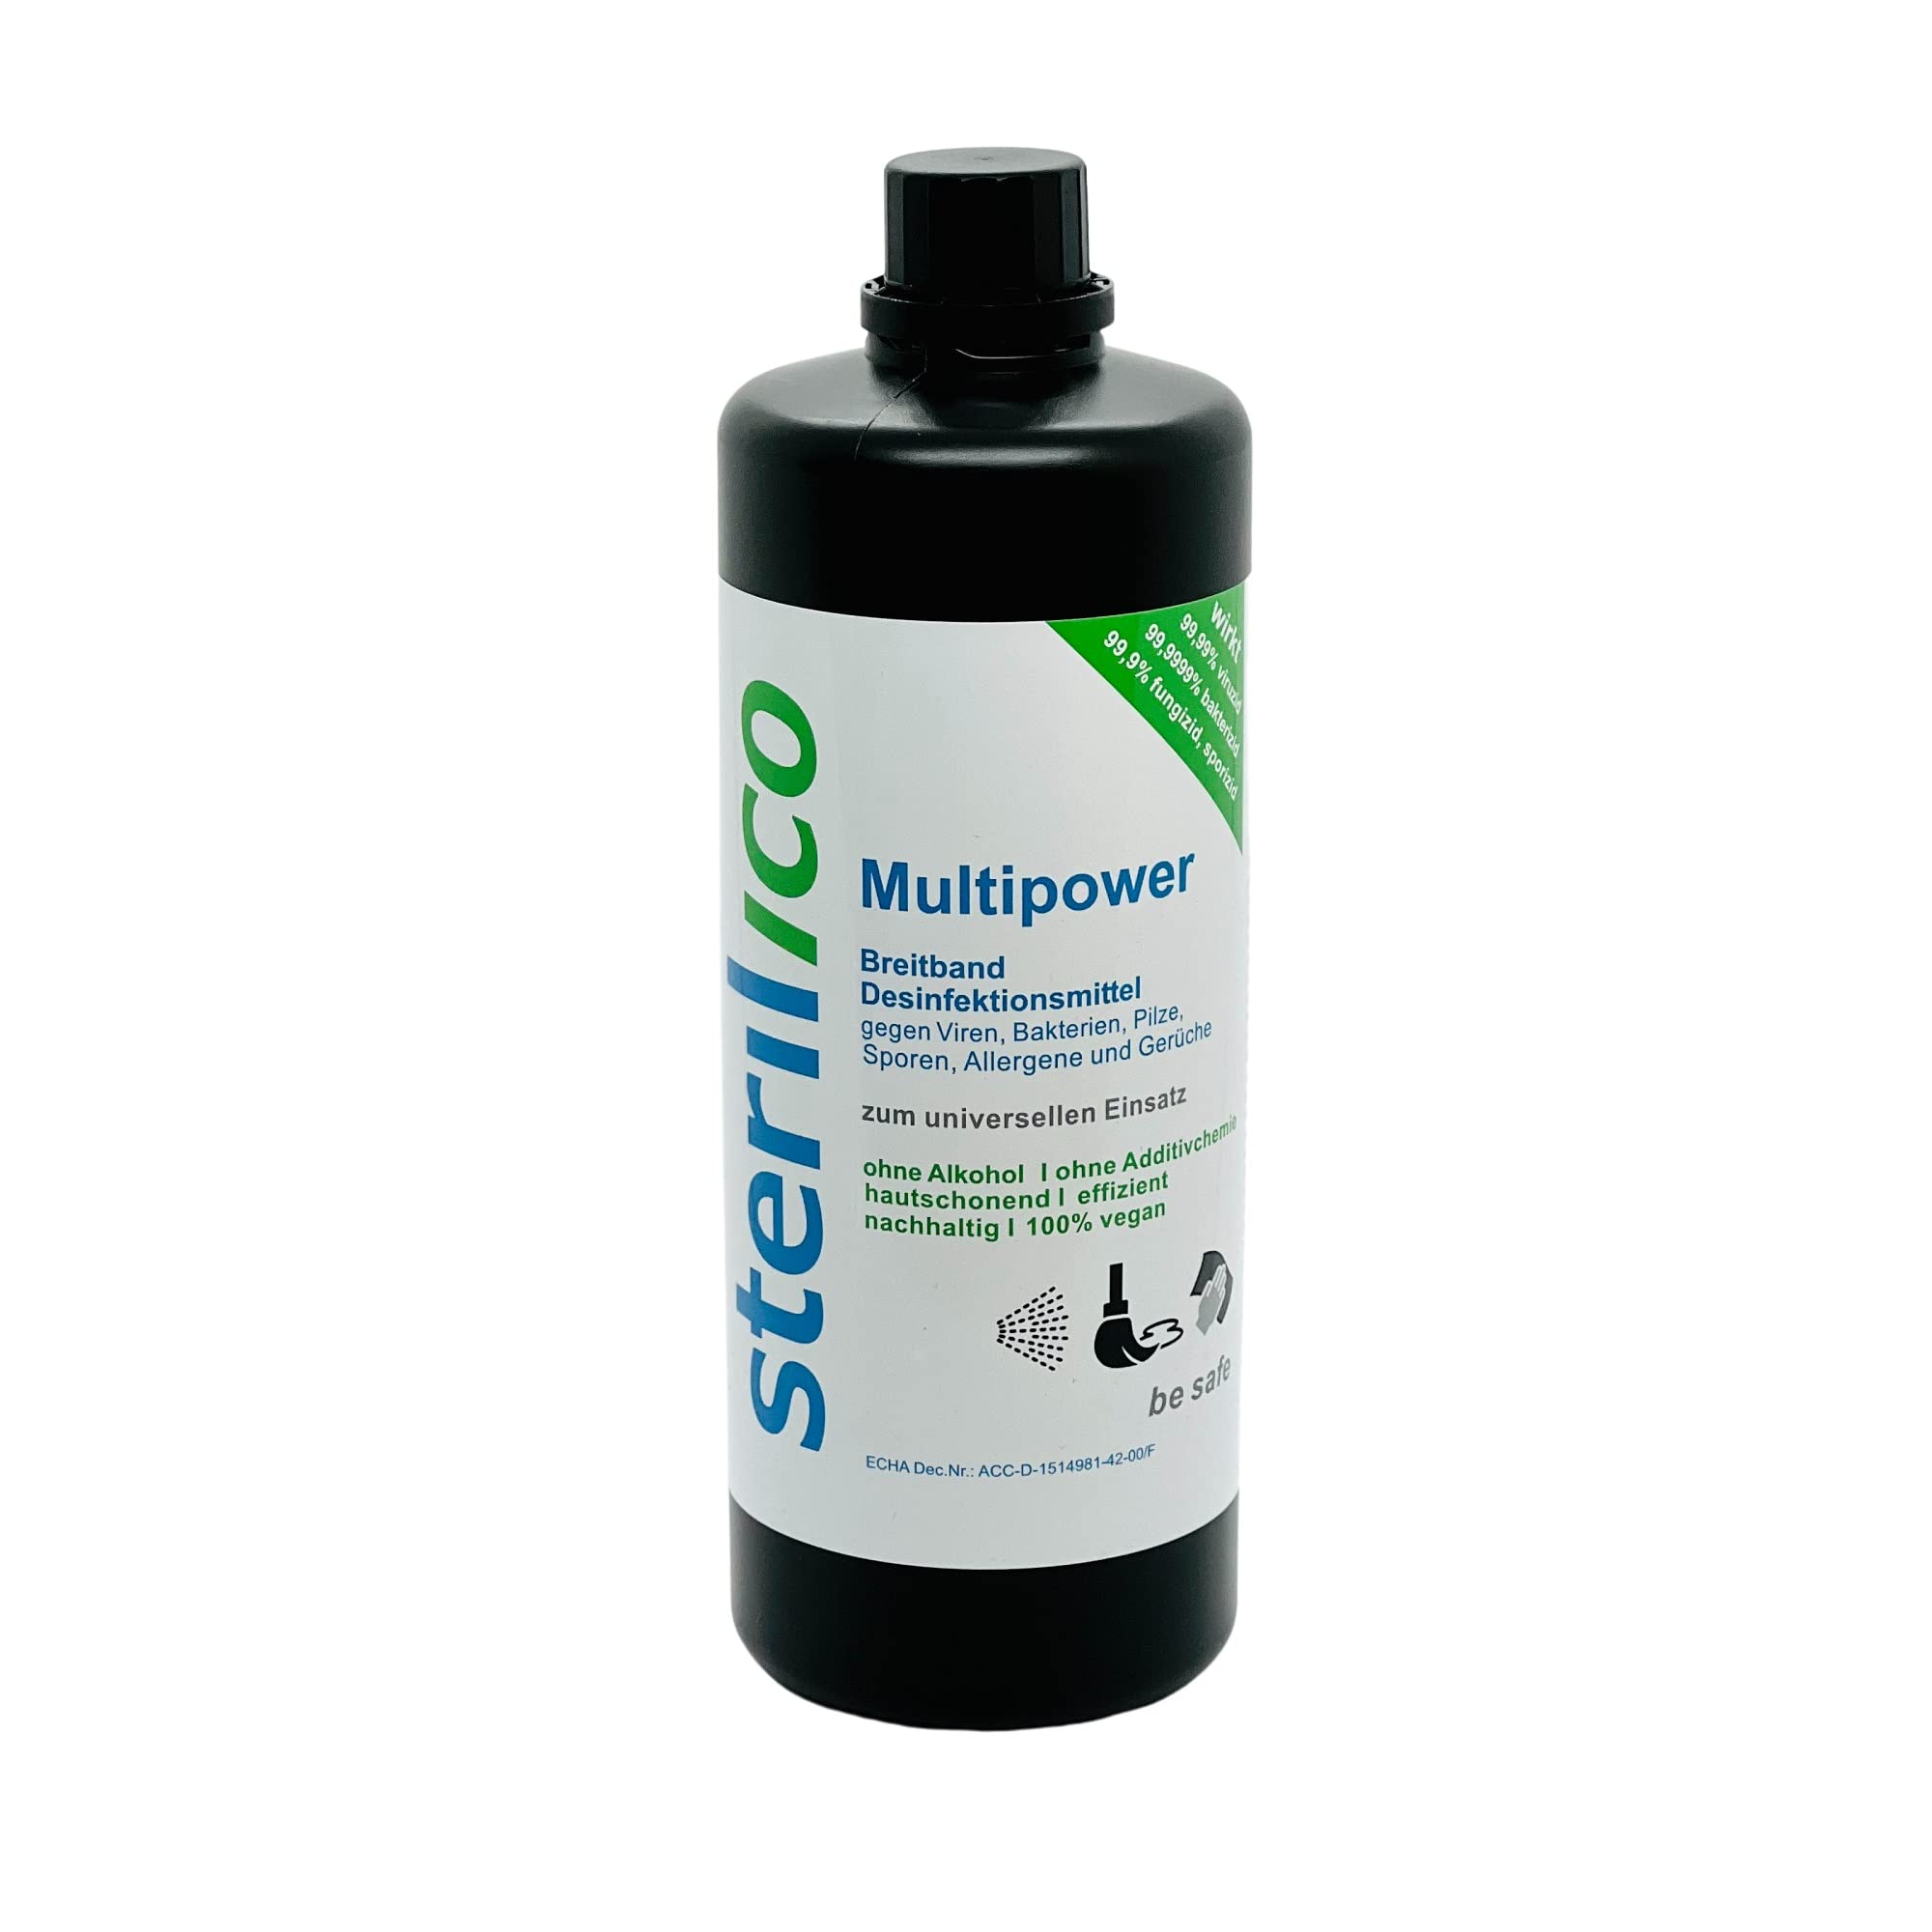 sterilico – Multipower – Desinfektionsmittel zum universellen Einsatz in Haushalt, Gewerbe und Industrie (1000ml)